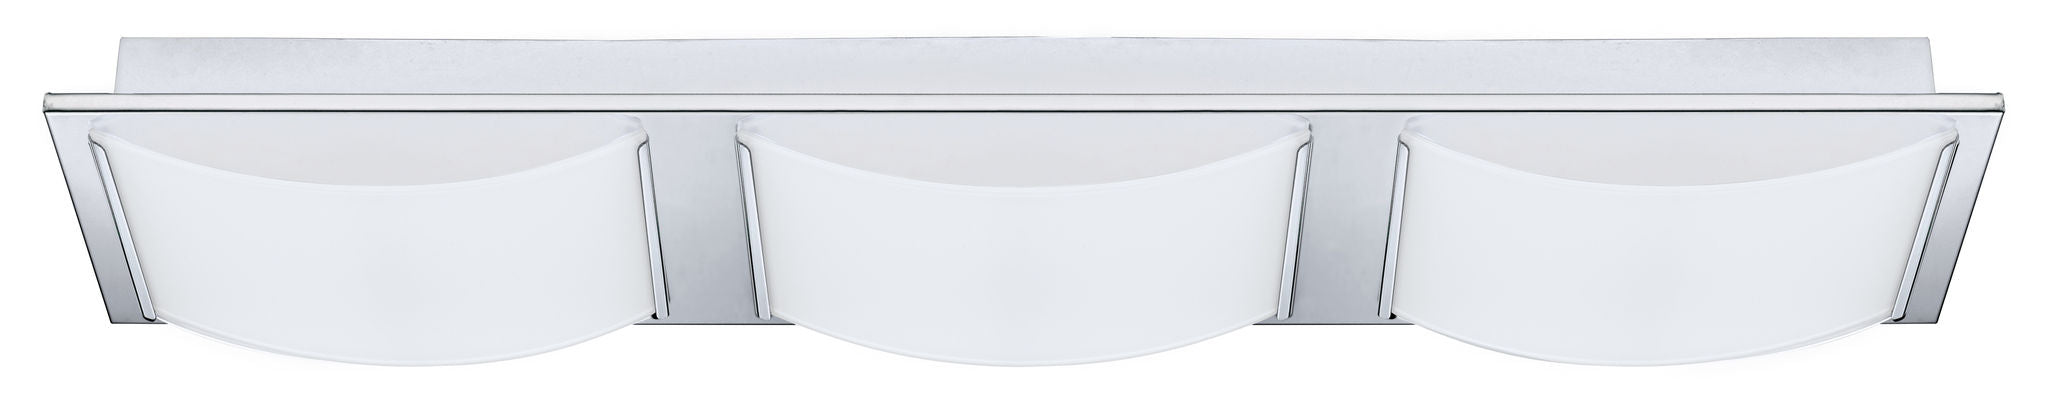 Wasao Flush mount Chrome INTEGRATED LED - 94467A | EGLO